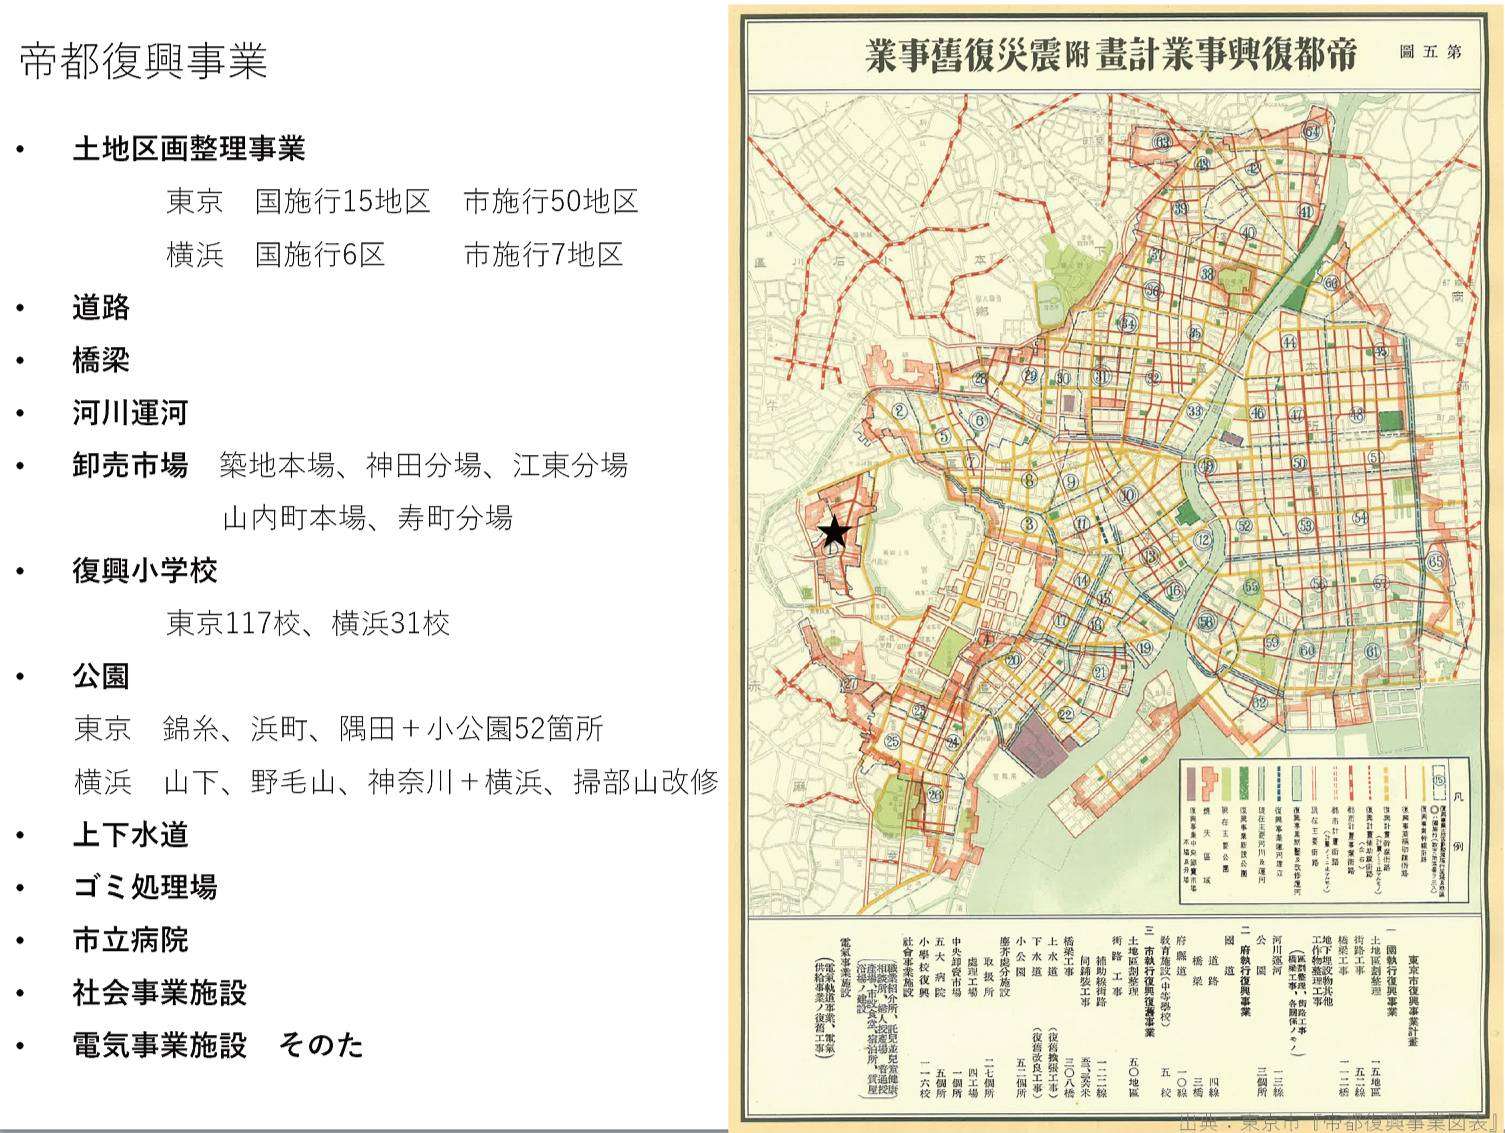 帝都復興事業（出典：東京市『帝都復興事業図表』）